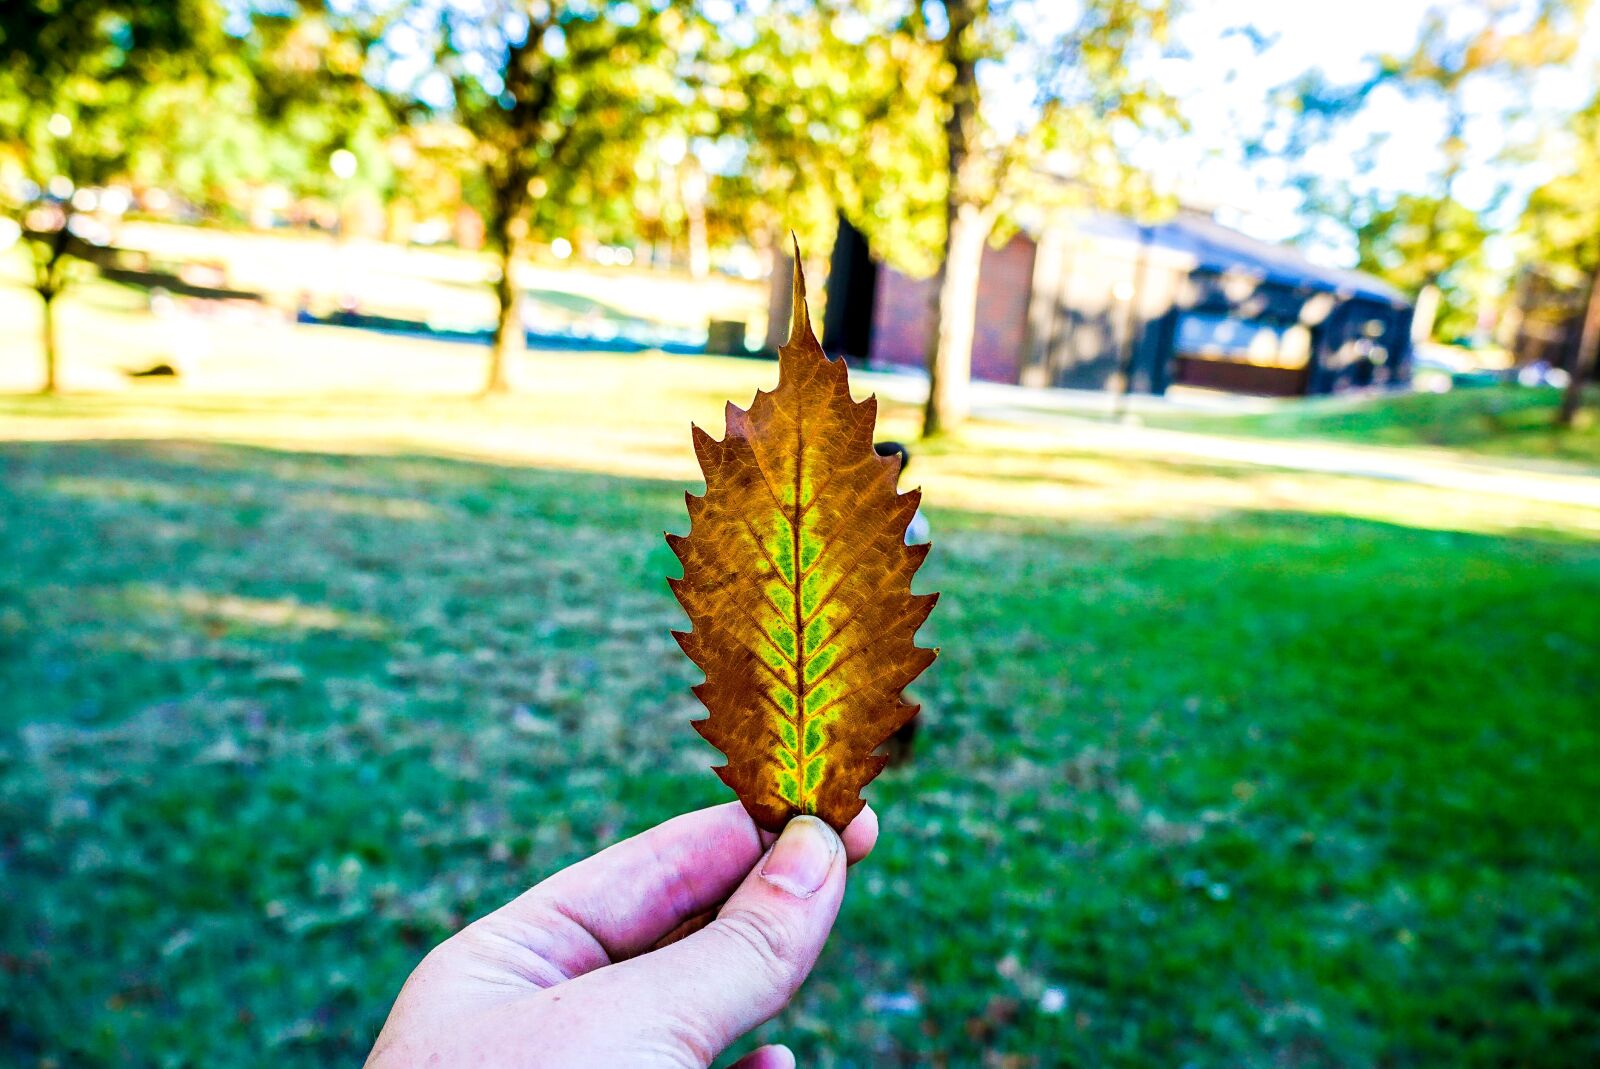 Sony a6000 sample photo. Autumn, leaf, city, park photography